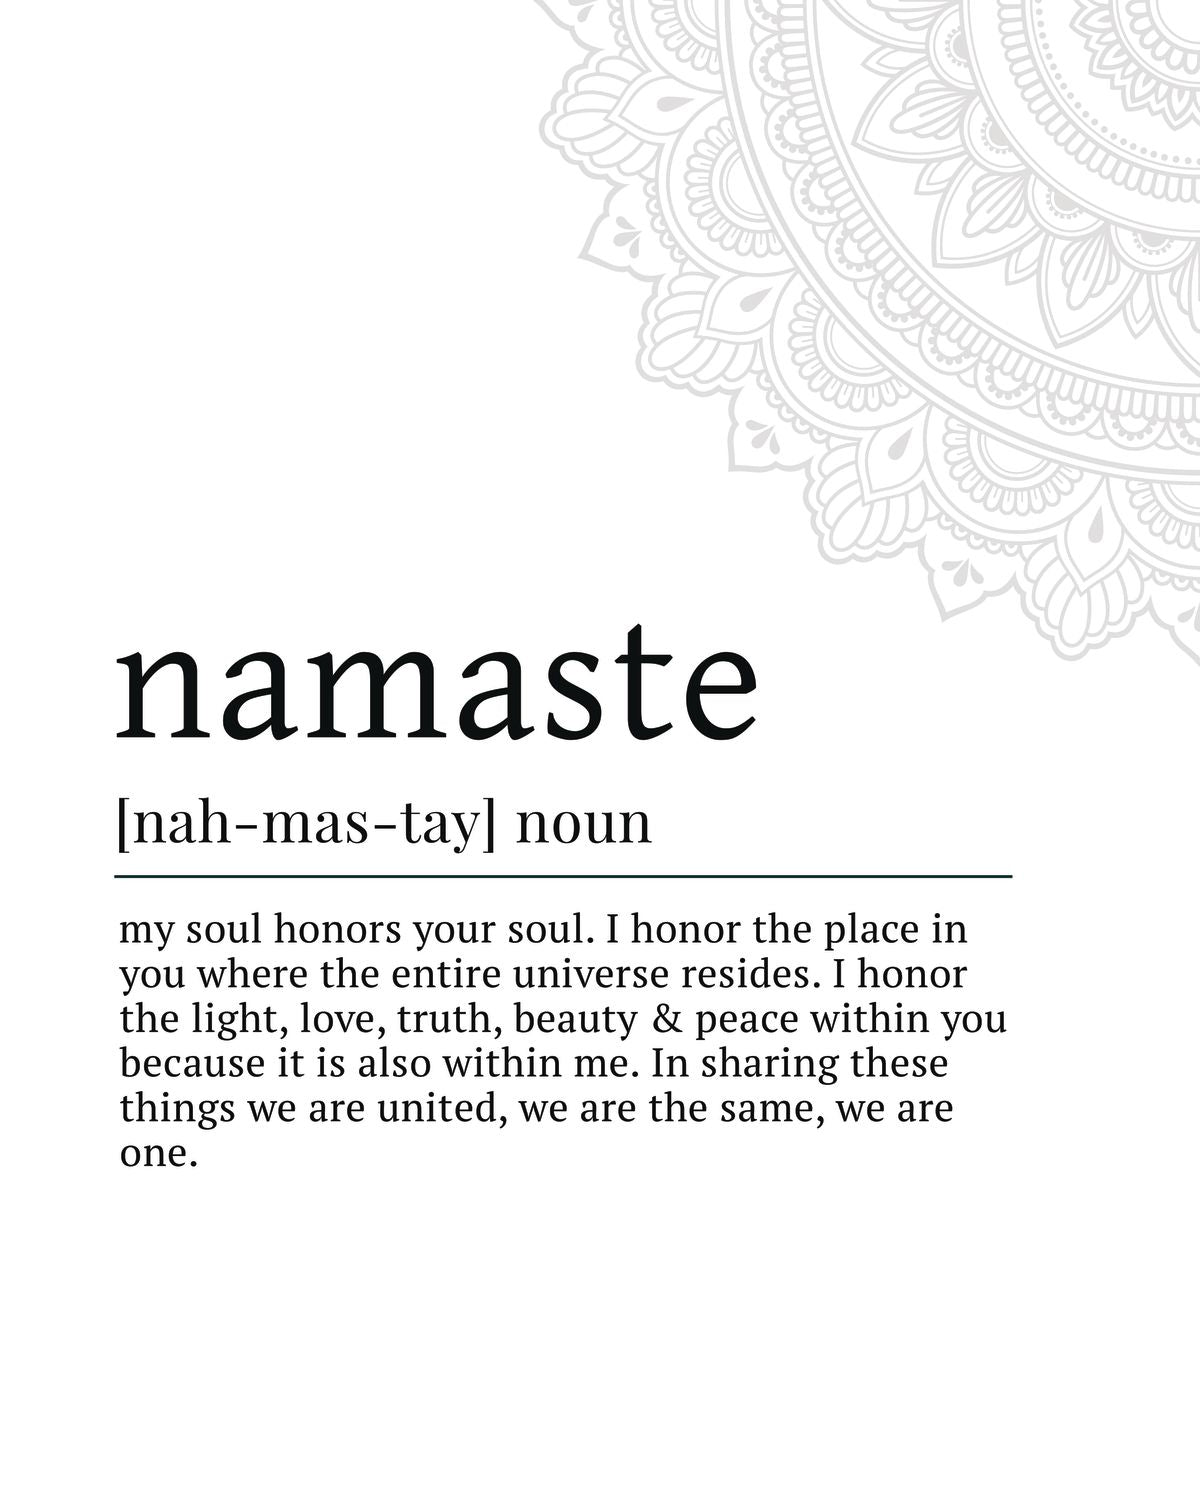 Namaste Description